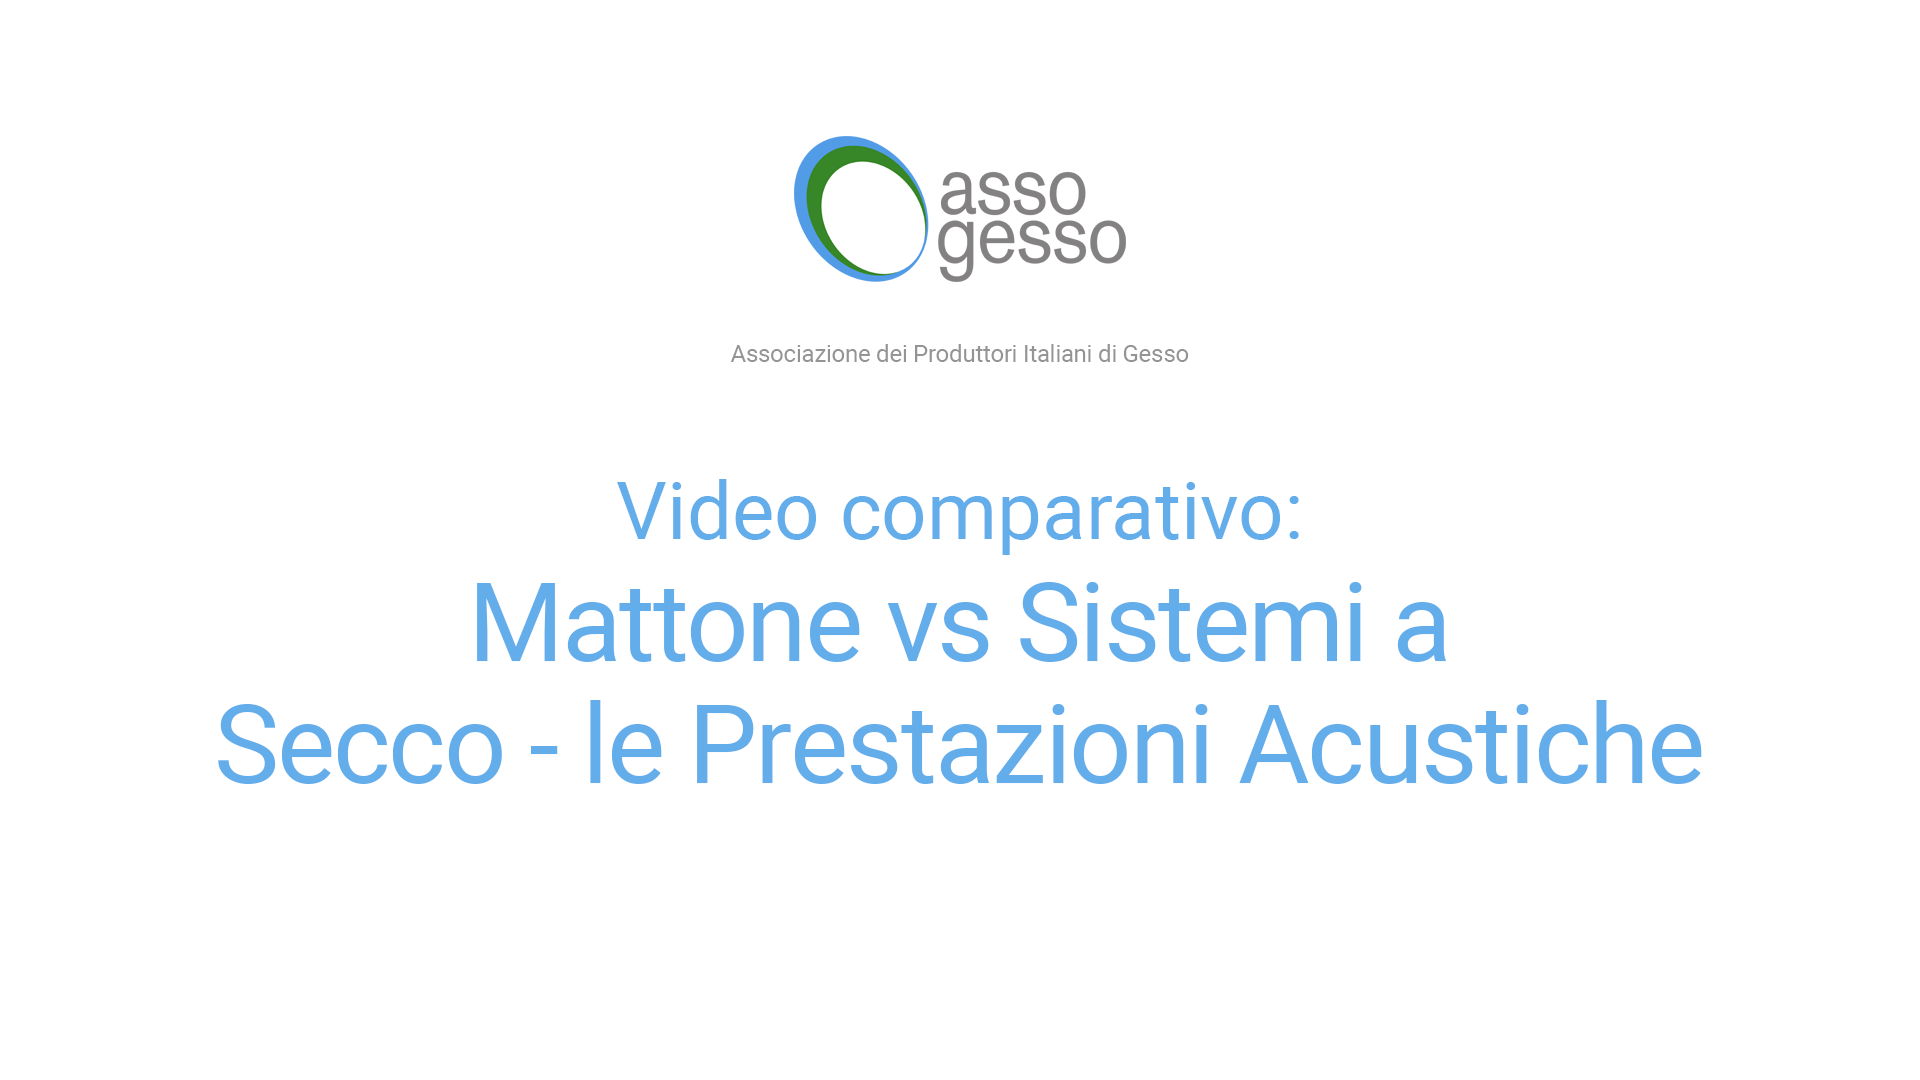 Video comparativo: Mattone vs Sistemi a Secco - le prestazioni acustiche